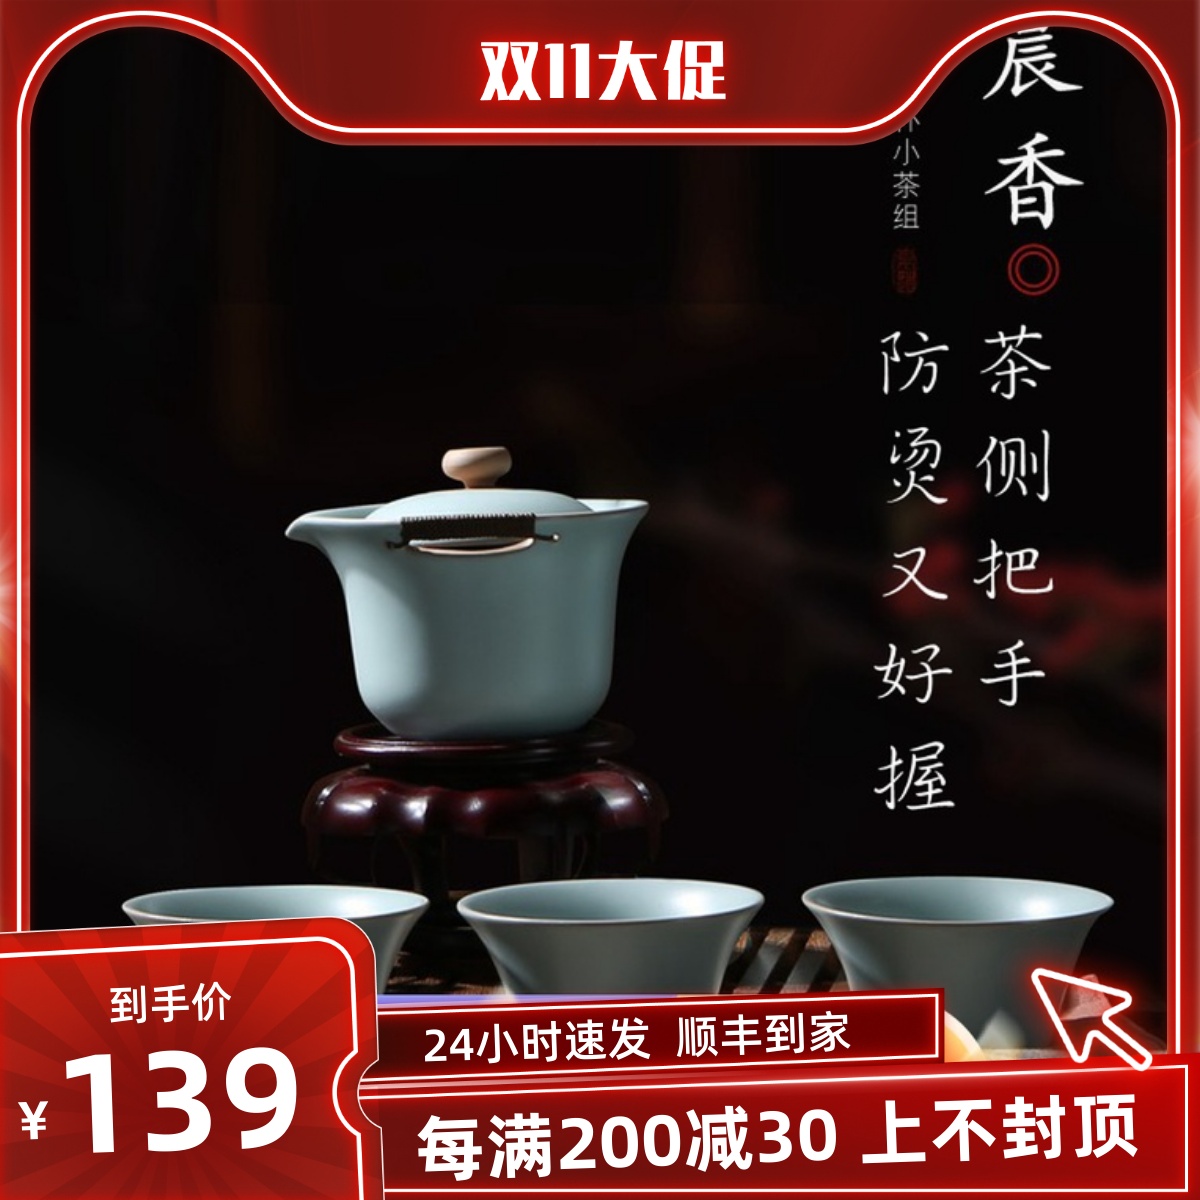 恒福东道汝窑晨香侧杯组家用一碗三杯陶瓷功夫茶具套组可养壶套组